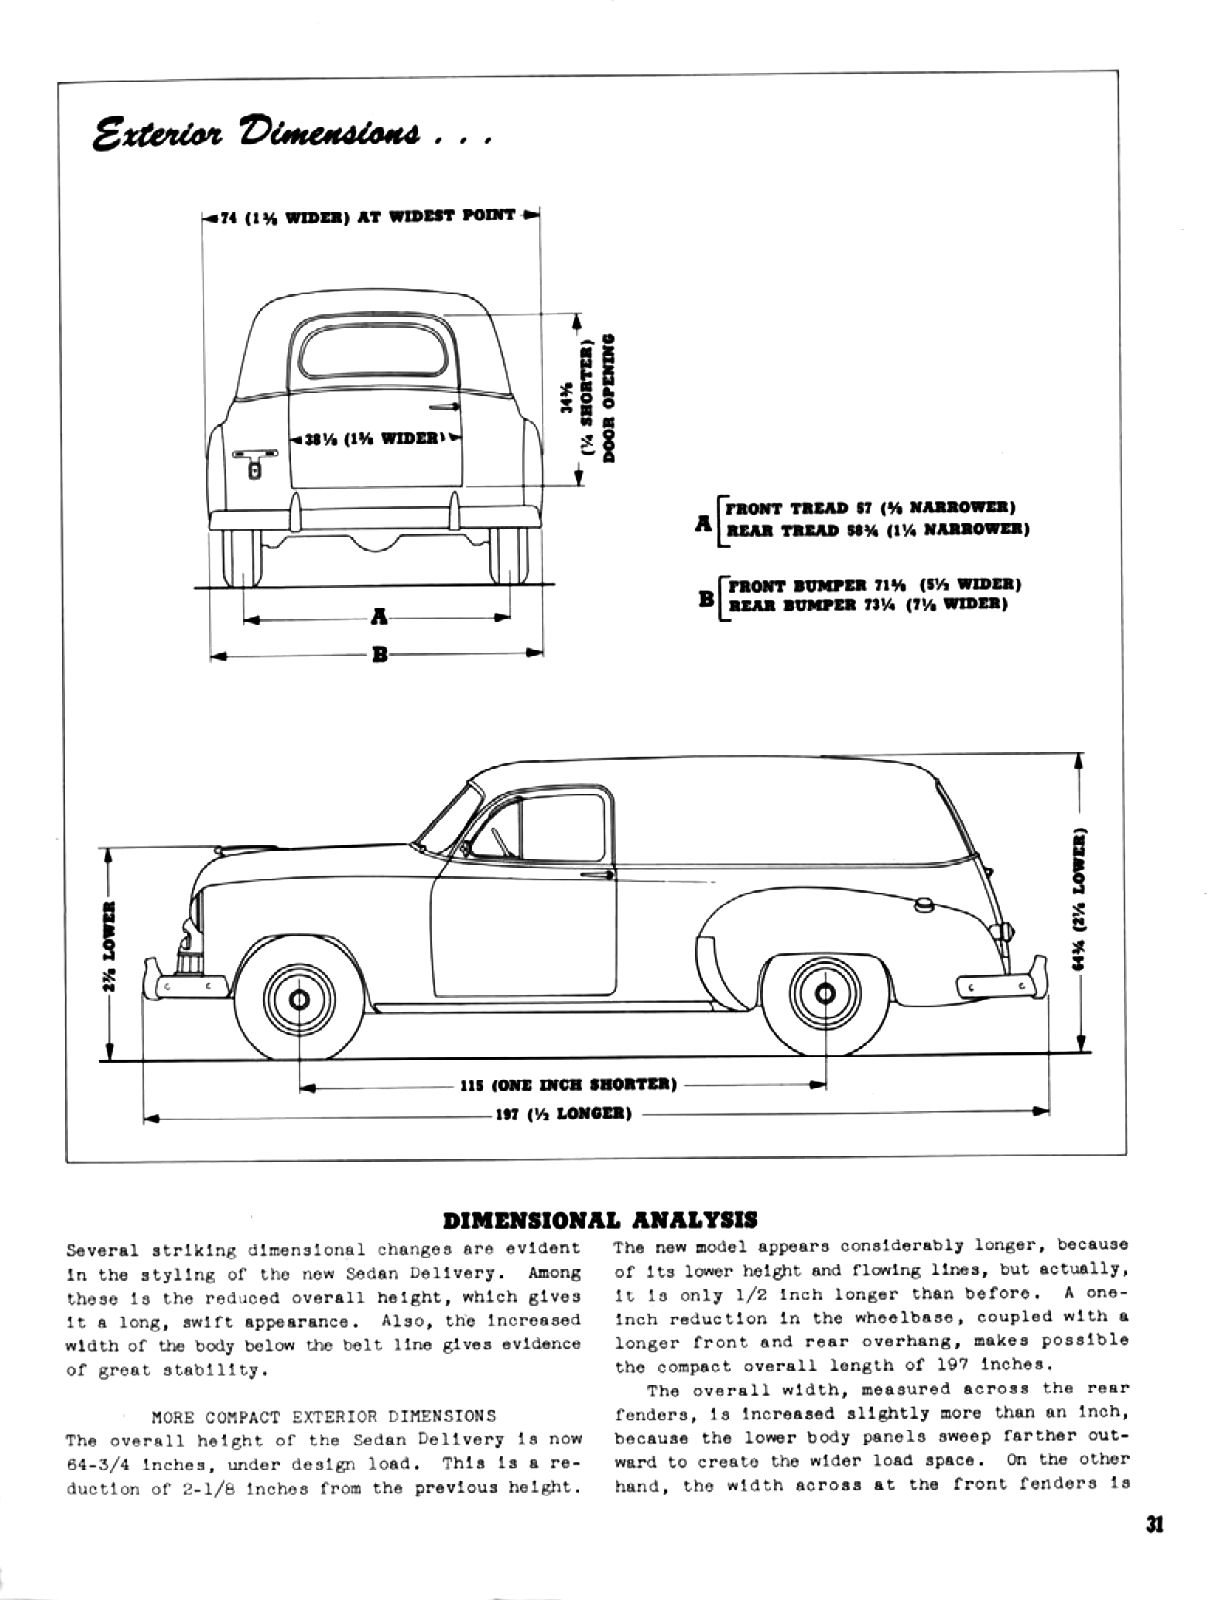 1949 Chevrolet Truck Engineering Features-31